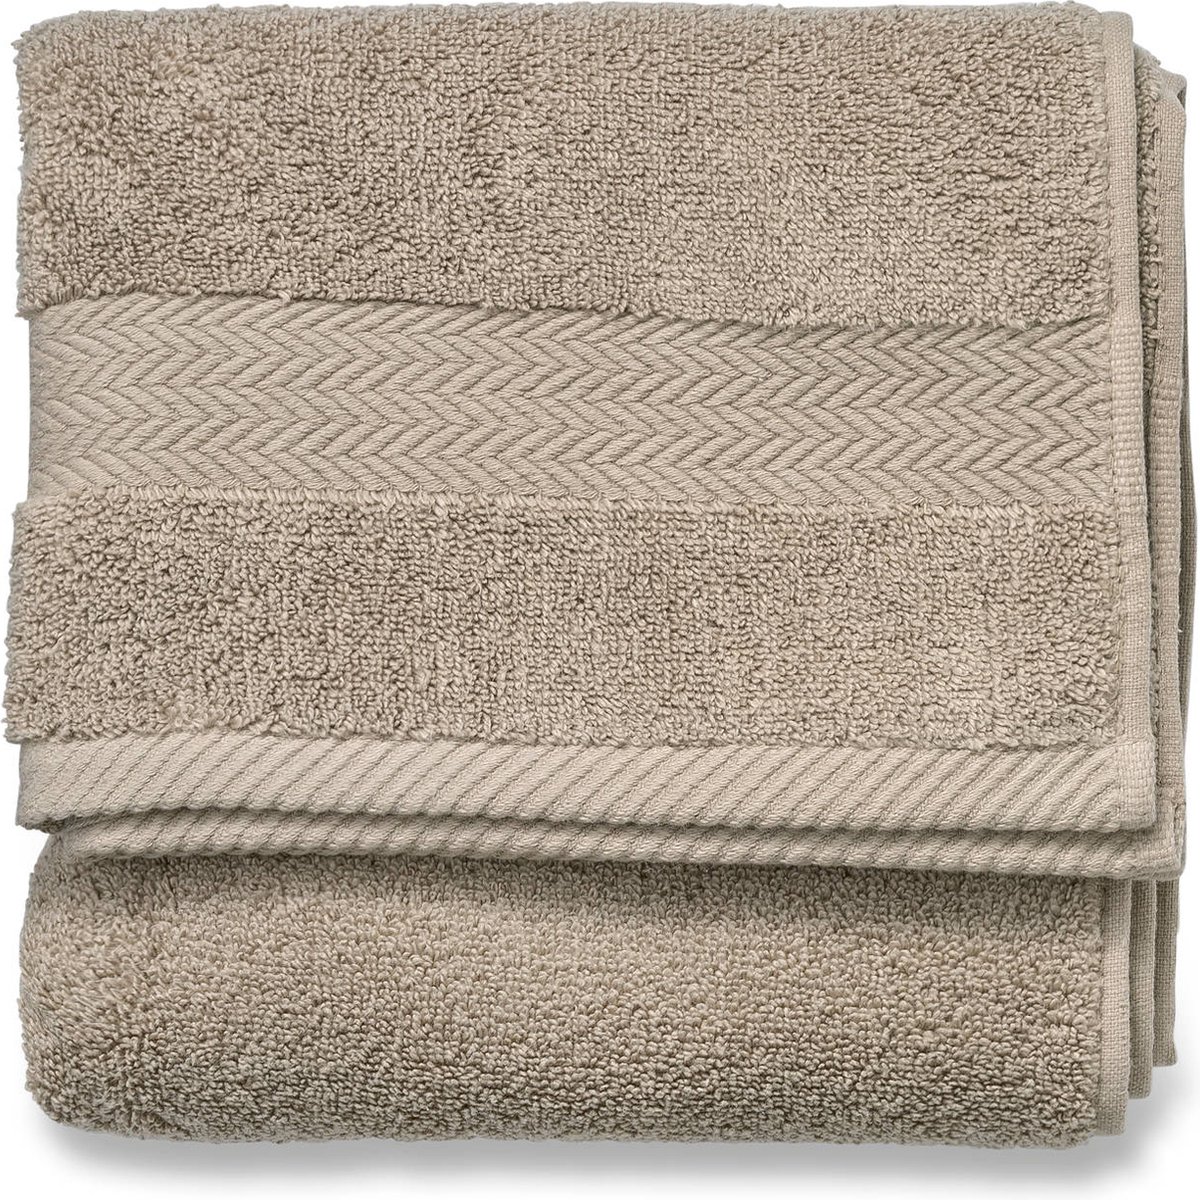 Blokker handdoek 600g - beige - 60x110 cm